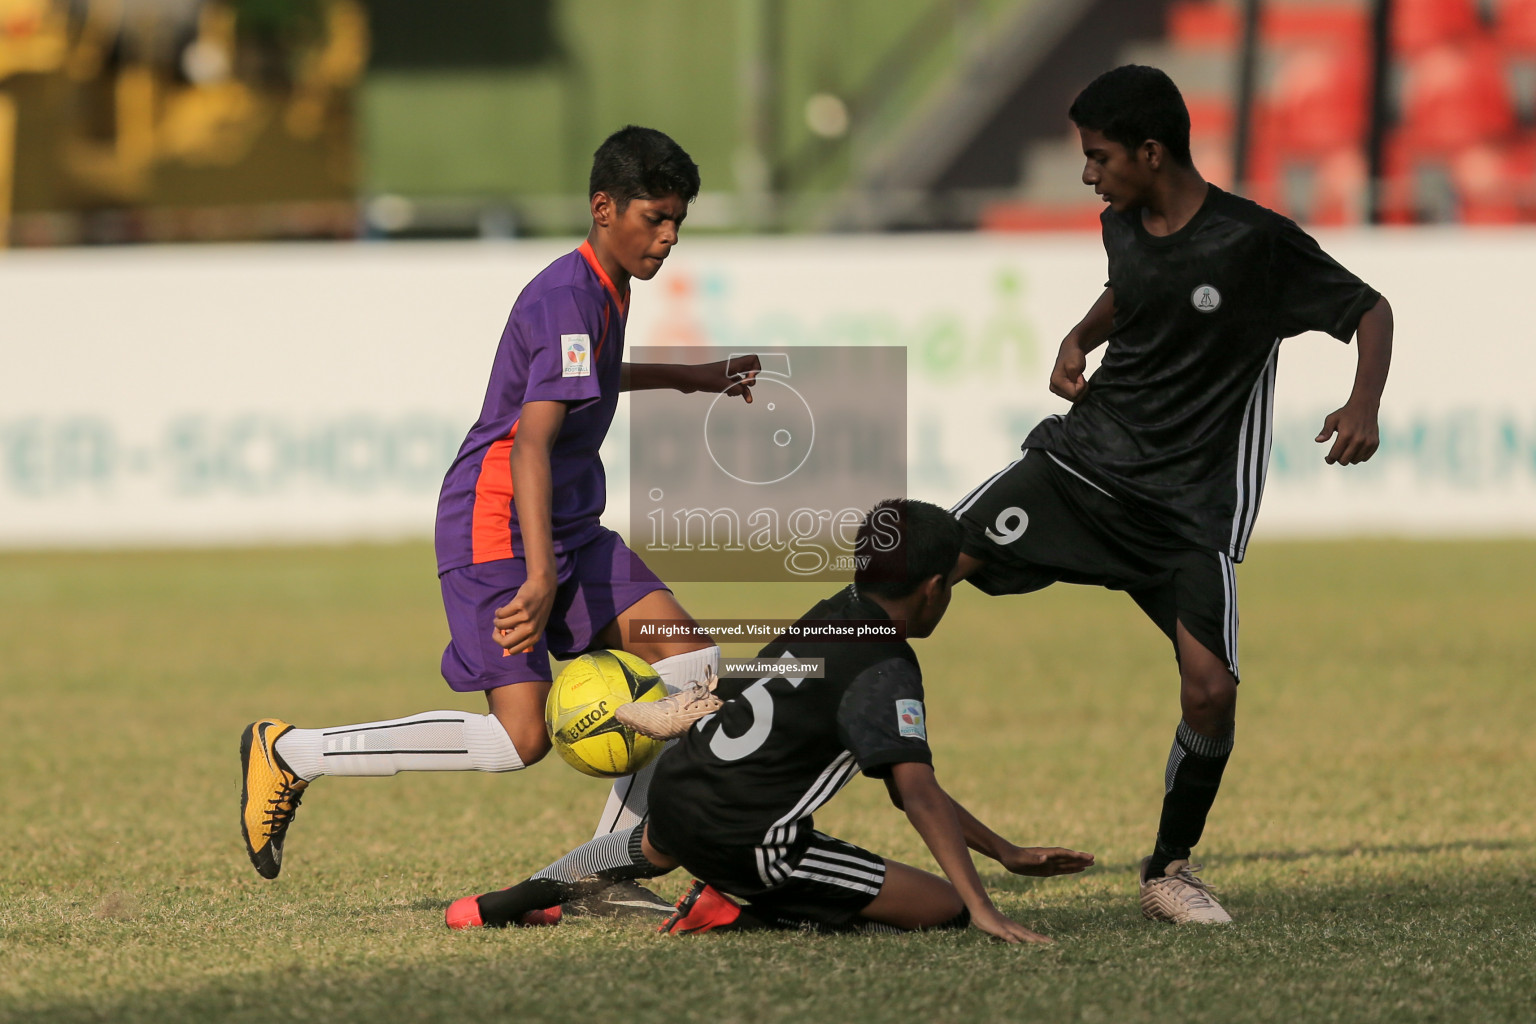 Ahmadhiyya School vs Ghiyasuddin International School in MAMEN Inter School Football Tournament 2019 (U13) in Male, Maldives on 13th April 2019 Photos: Suadh Abdul Sattar/ images.mv